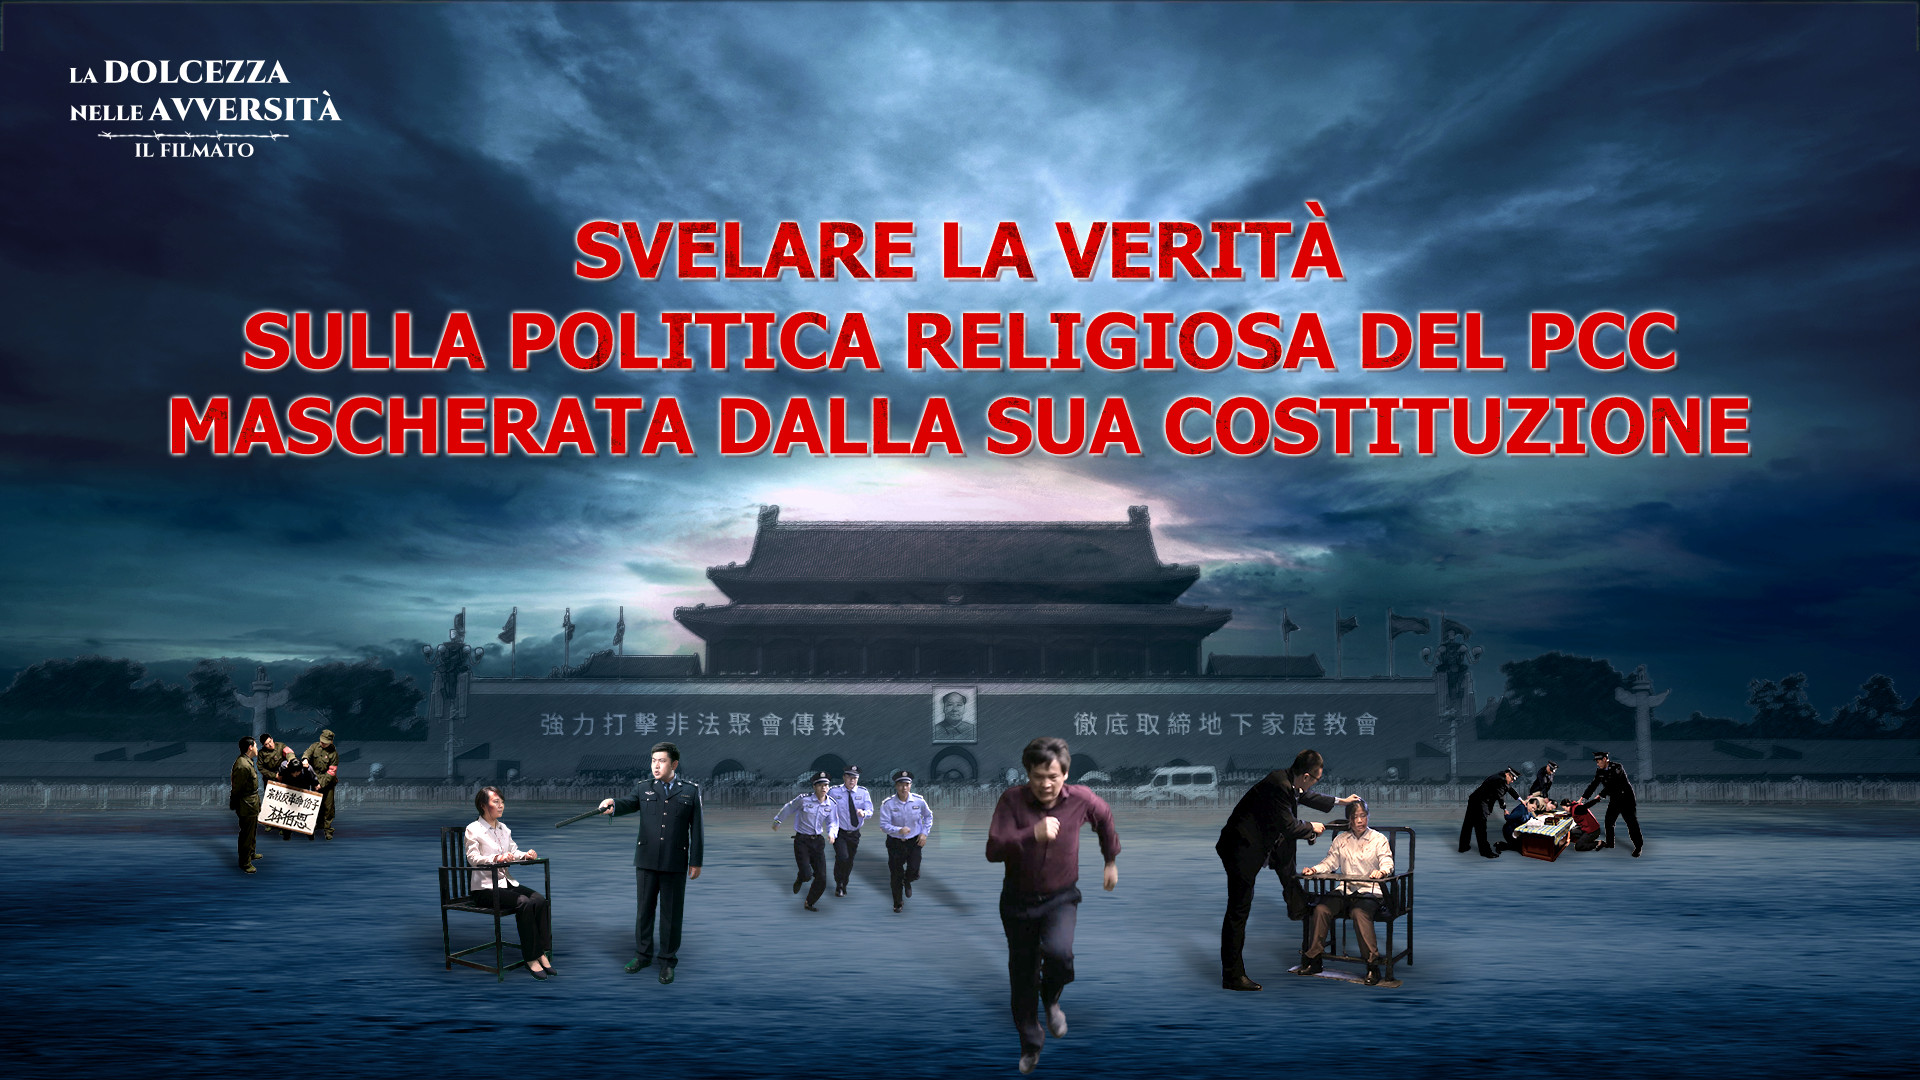 Svelare la verità sulla politica religiosa del PCC mascherata dalla sua Costituzione